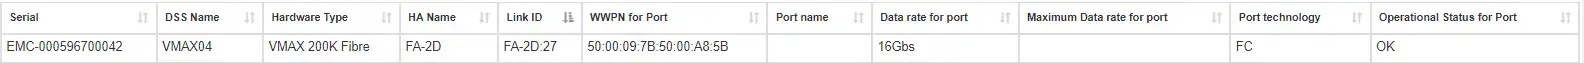 storage_port